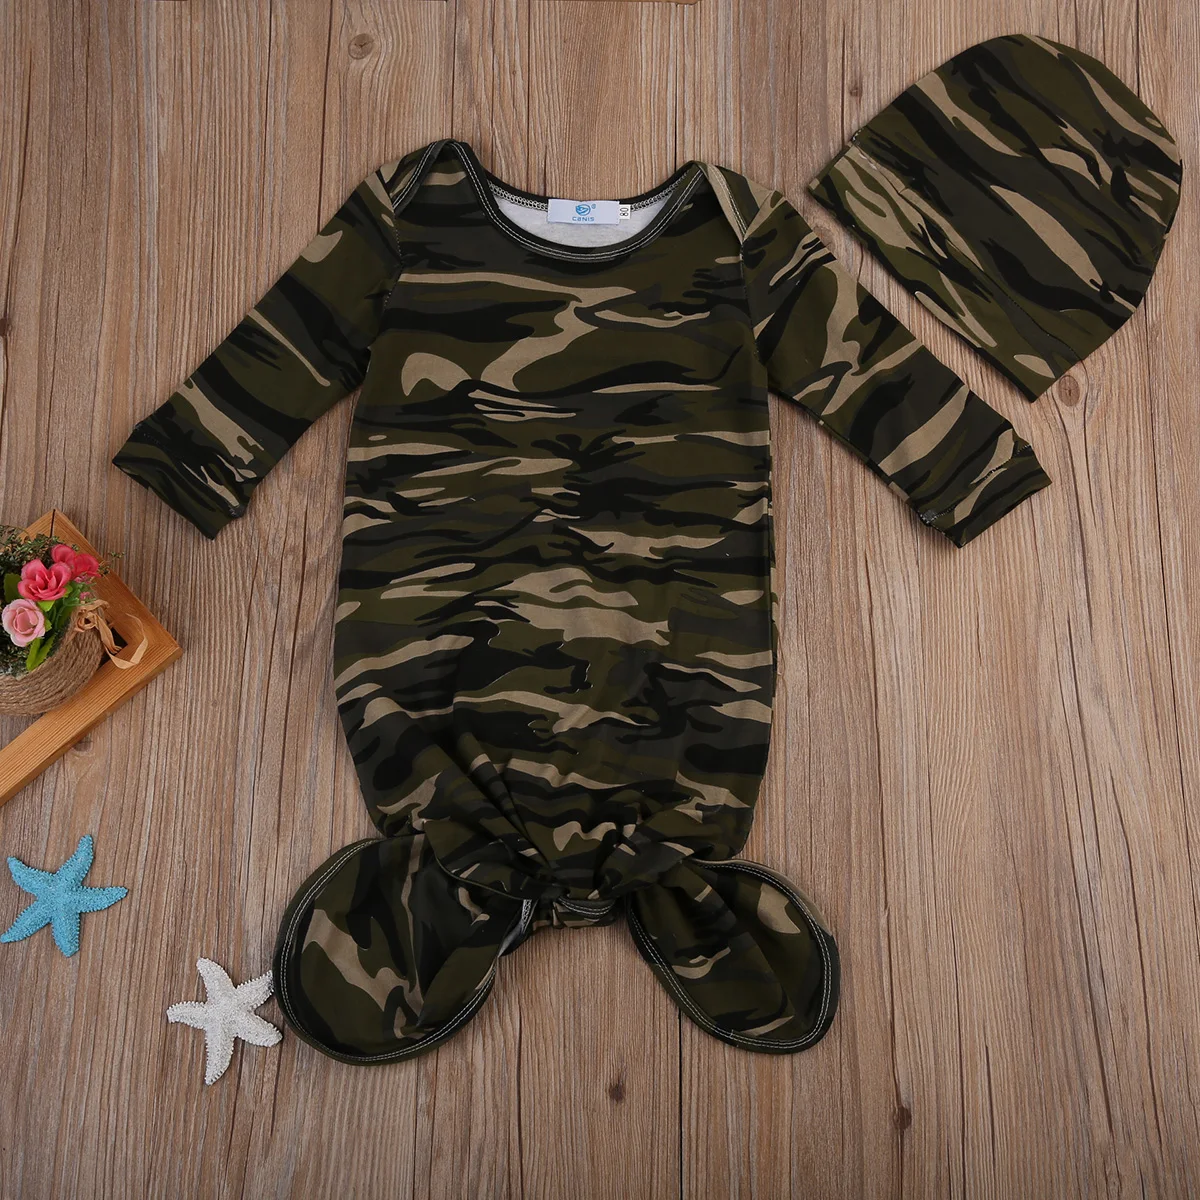 Для новорожденных пеленать Одеяло пеленать ребенка спать муслин Обёрточная бумага камуфляж